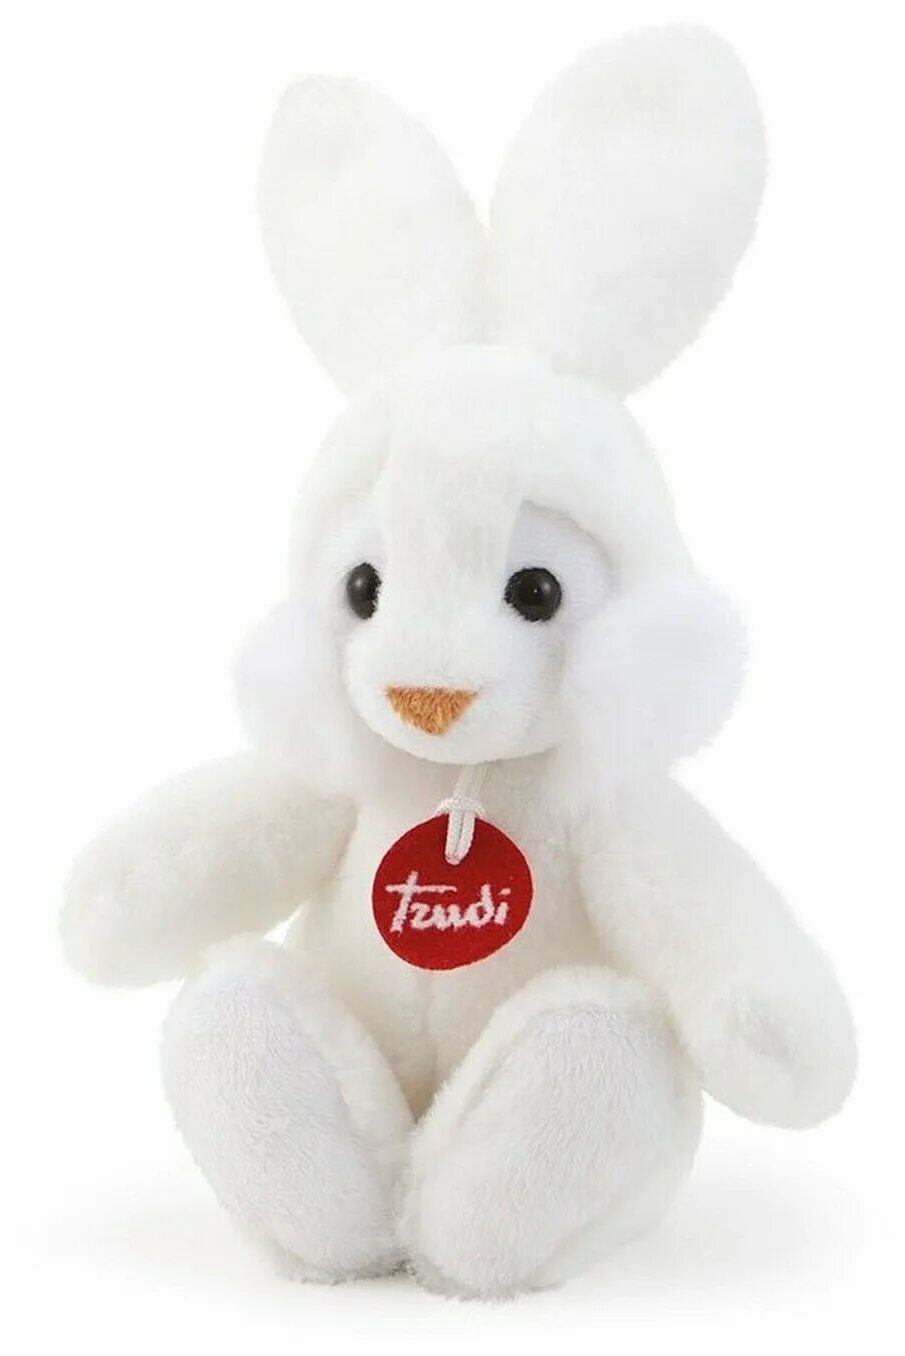 Игрушка белый заяц. Trudi игрушка заяц. Мягкая игрушка озвученная «зайчик лаки», 20 см. Зайчик Trudi. Мягкая игрушка зайчик белый.